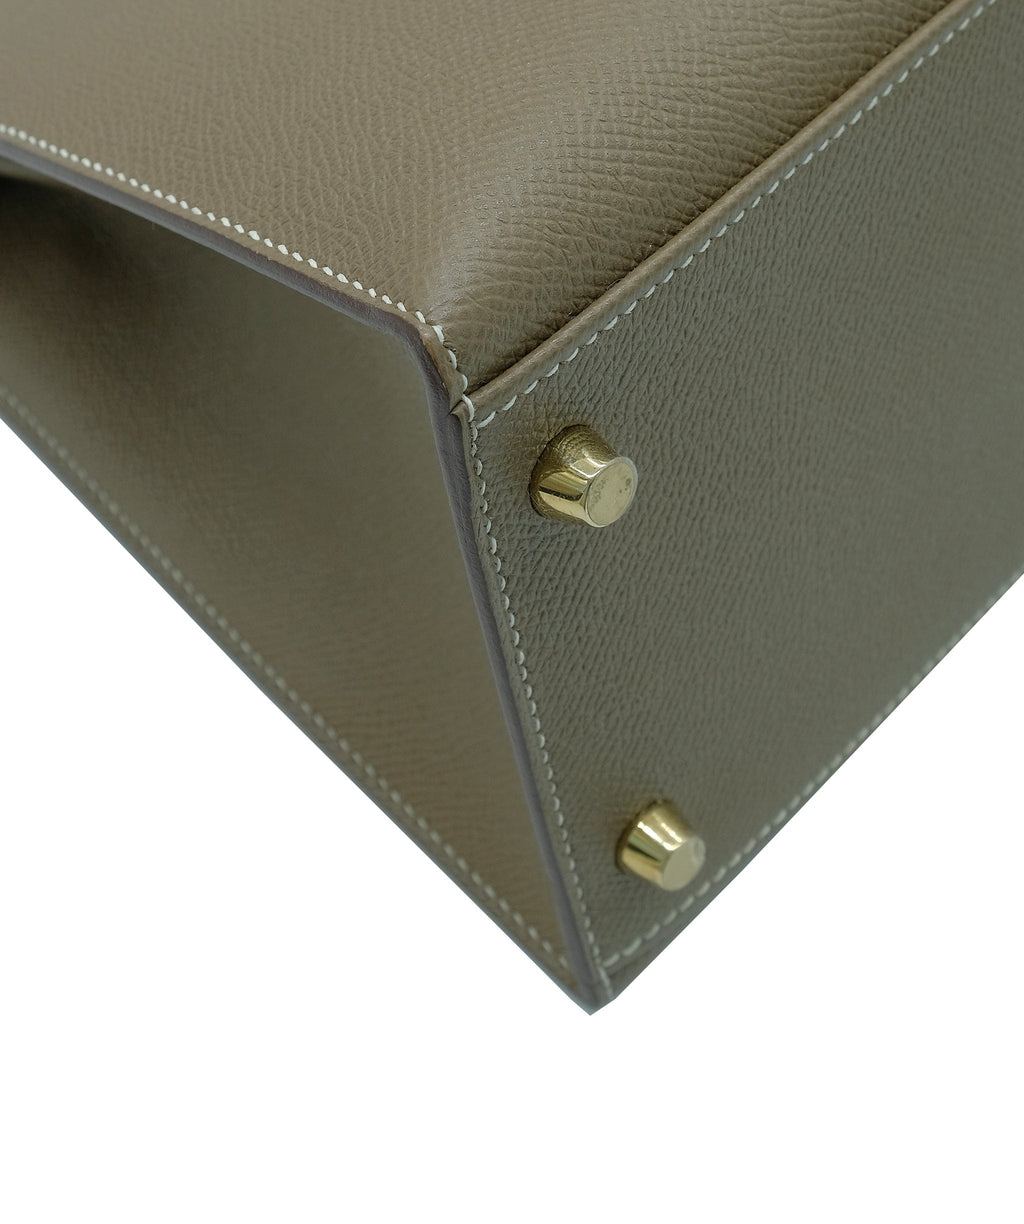 Hermes Etoupe Epsom Leather Gold Hardware Kelly 25 Bag – STYLISHTOP